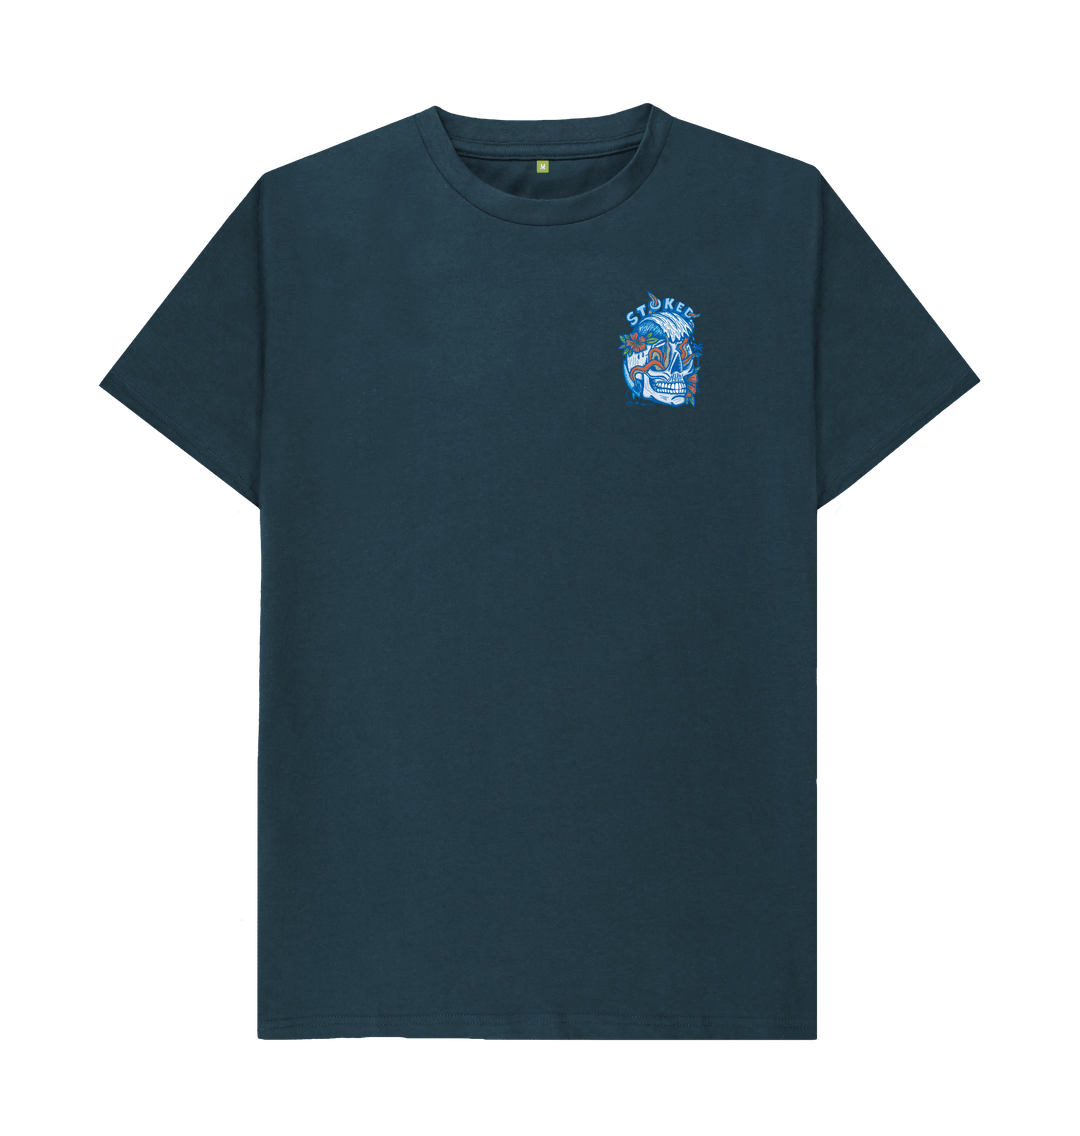 stoked_design_shirt_denimblue